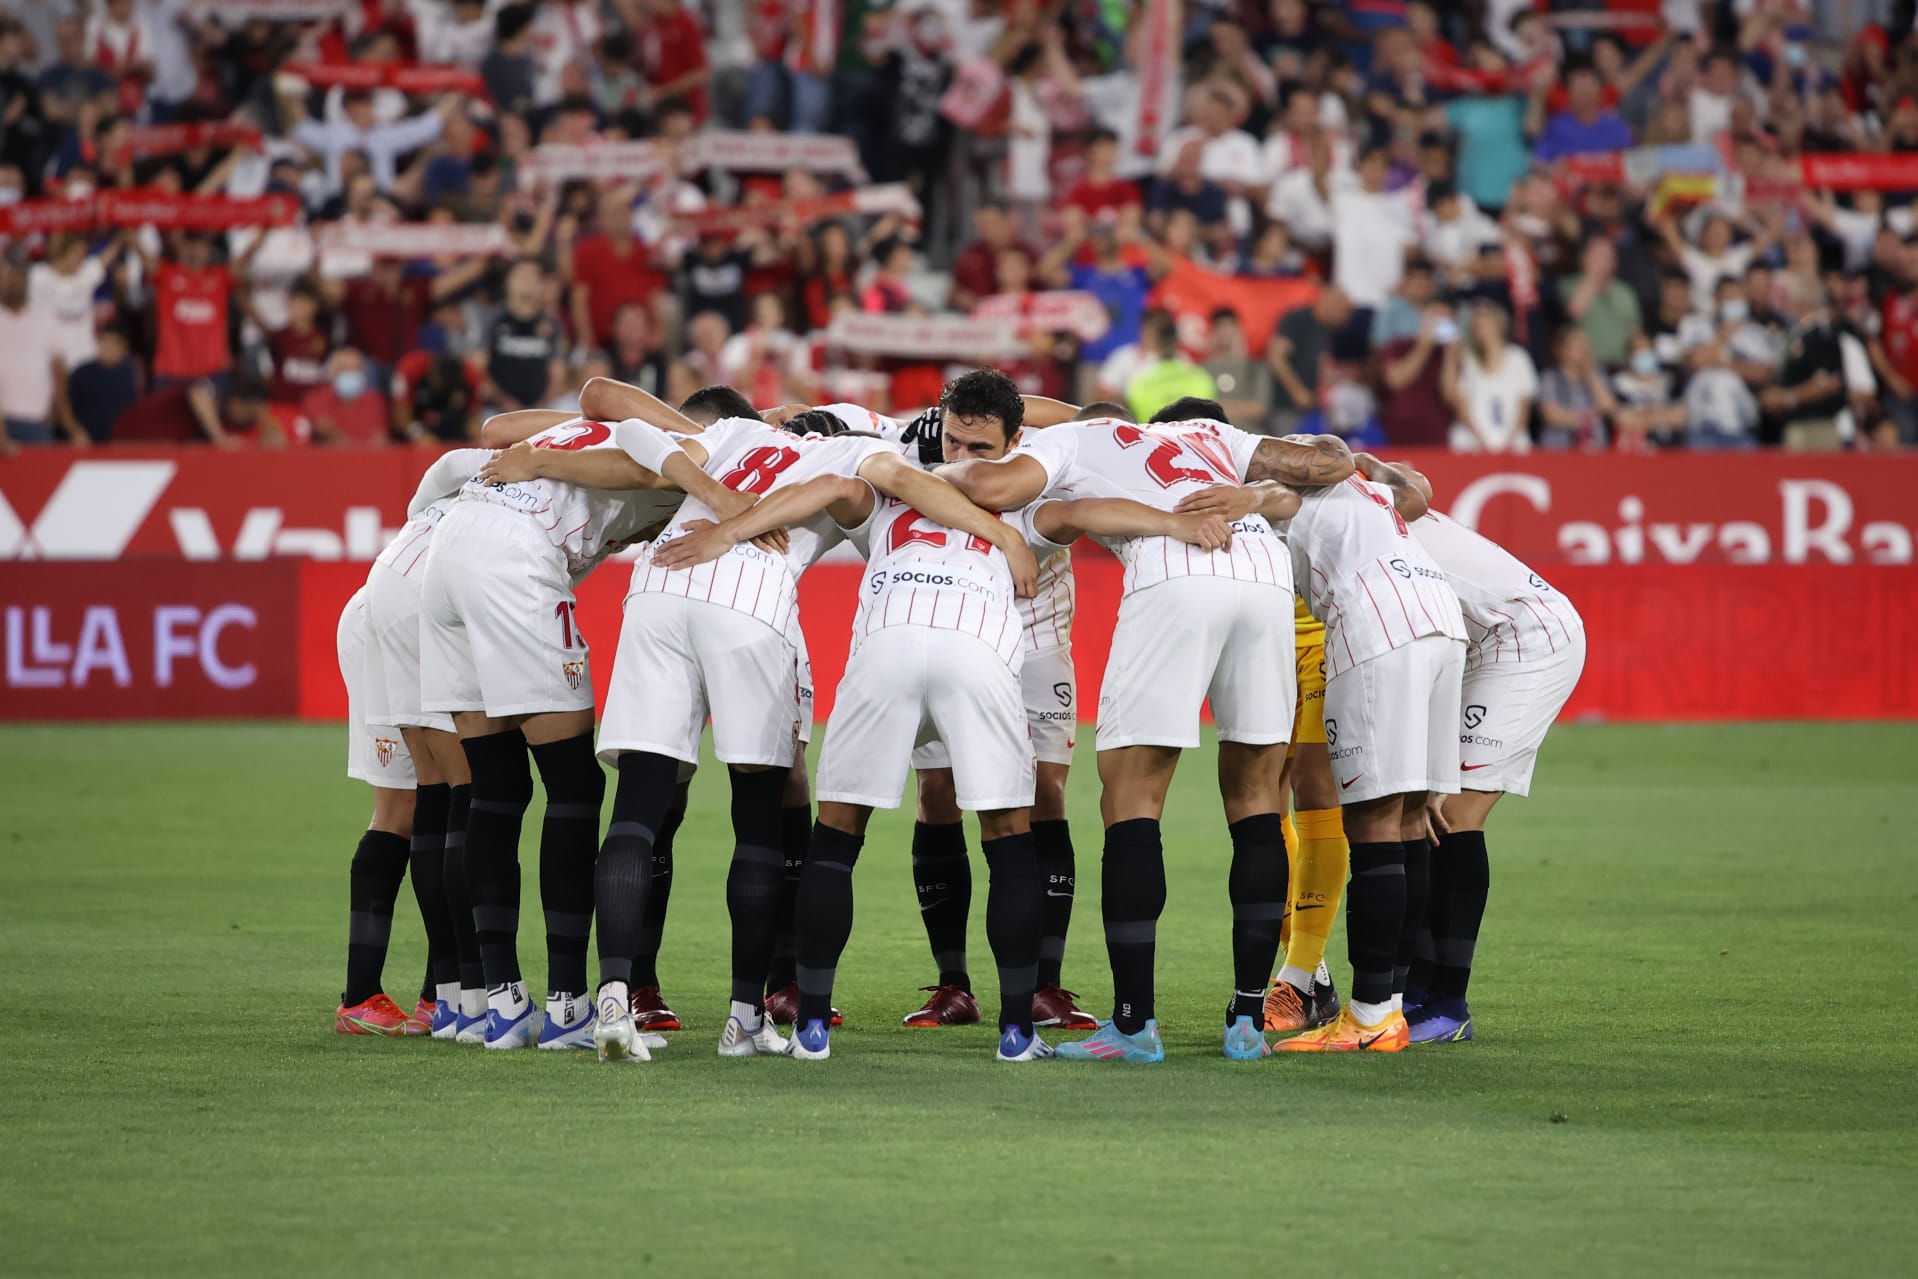 Piña de jugadores del Sevilla FC antes de enfrentarse al Athletic Club